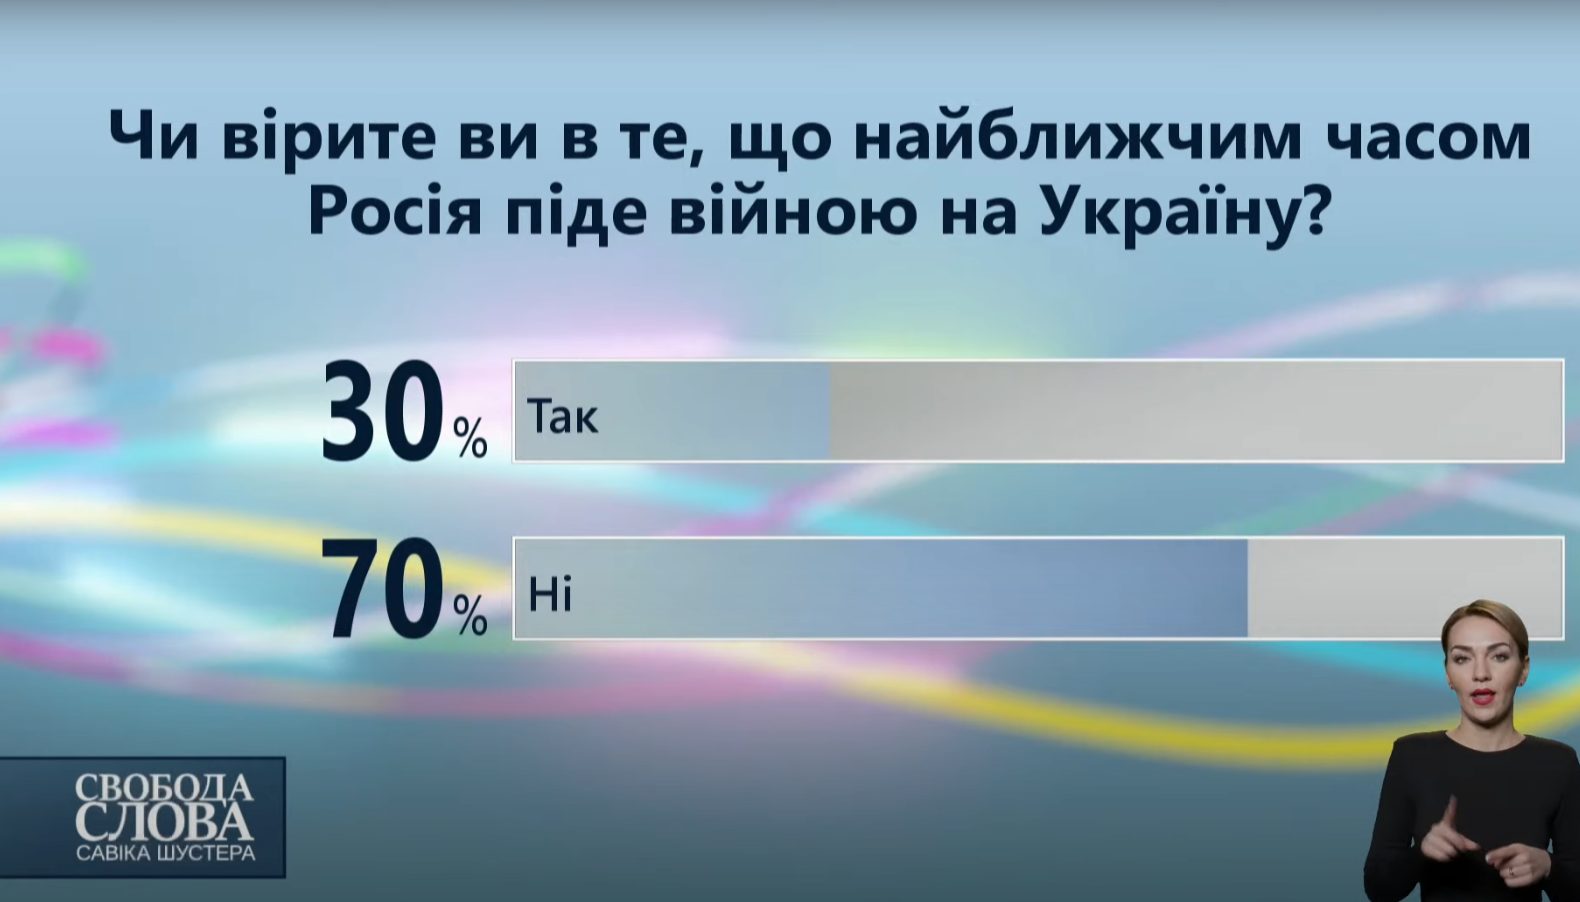 Результаты опроса среди зрителей в студии о возможном вторжении России.